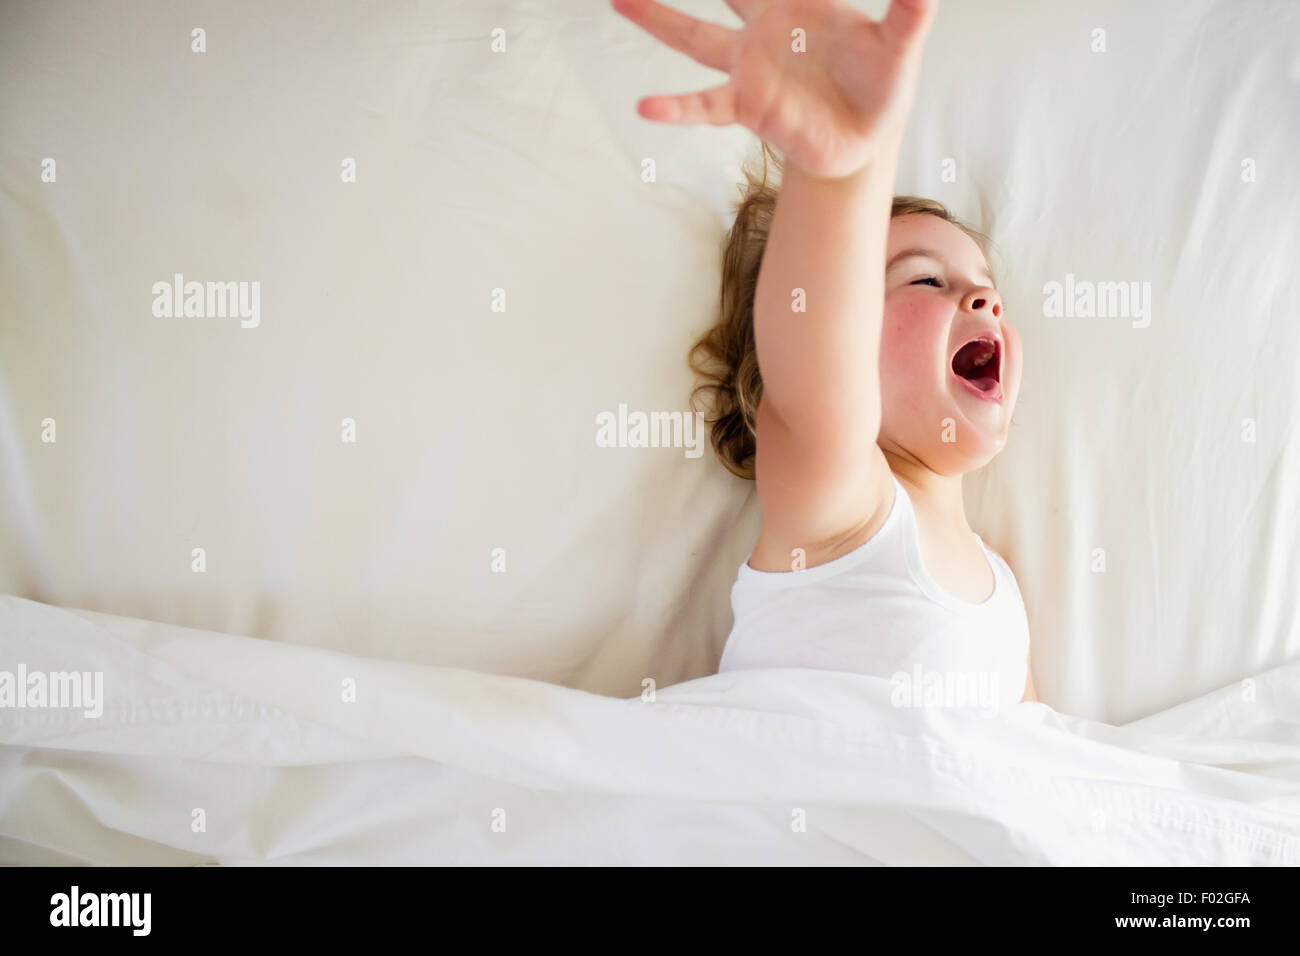 Girl in bed screaming Stock Photo